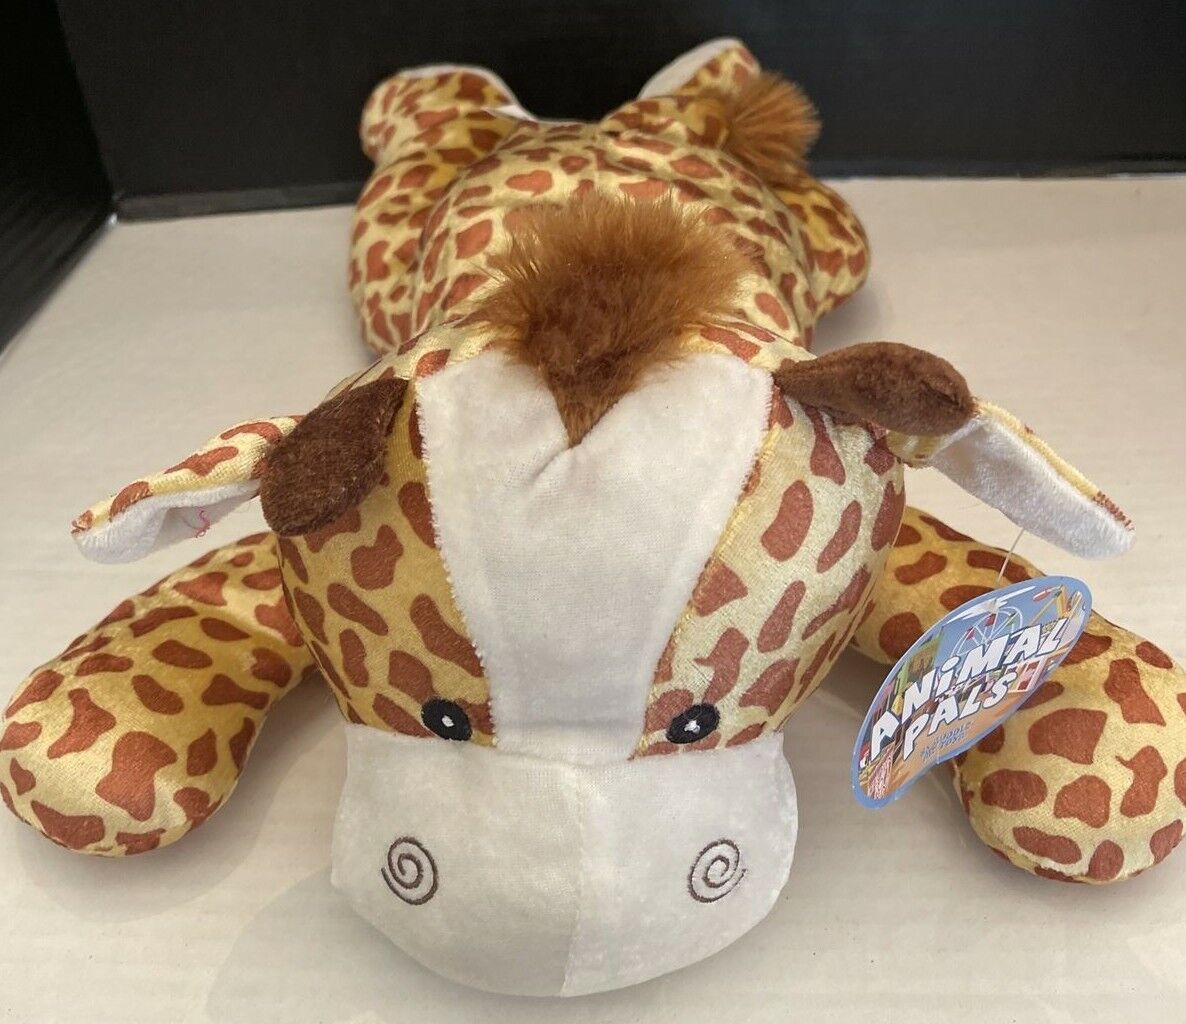 Animal Pals Giraffe Plush Golden Spotted Stoffed Animal Soft Toy  Kellytoys 21'